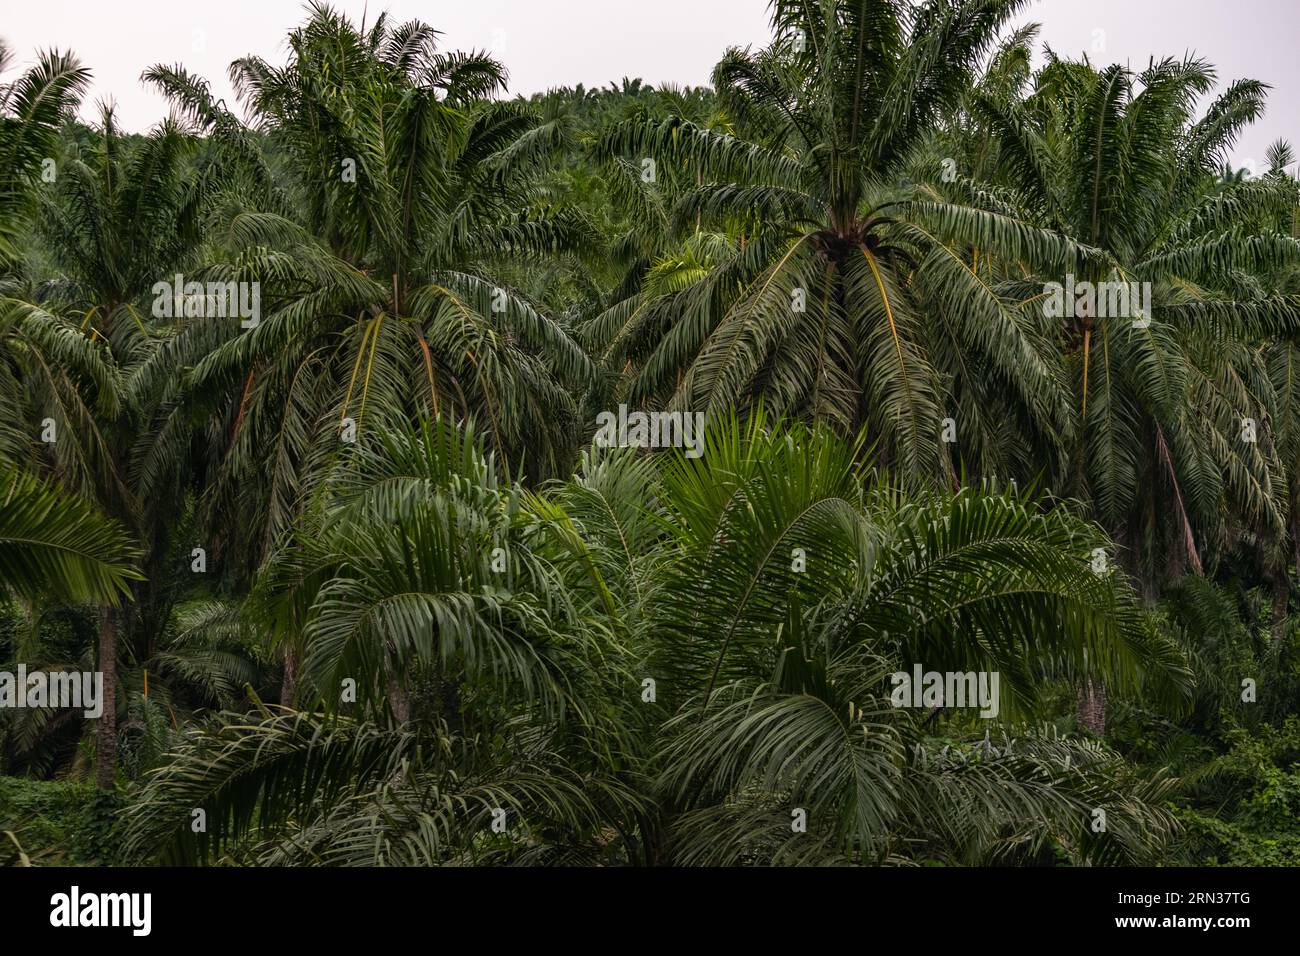 Incredibile vista di una piantagione di palme da olio. Immagine molto significativa Foto Stock